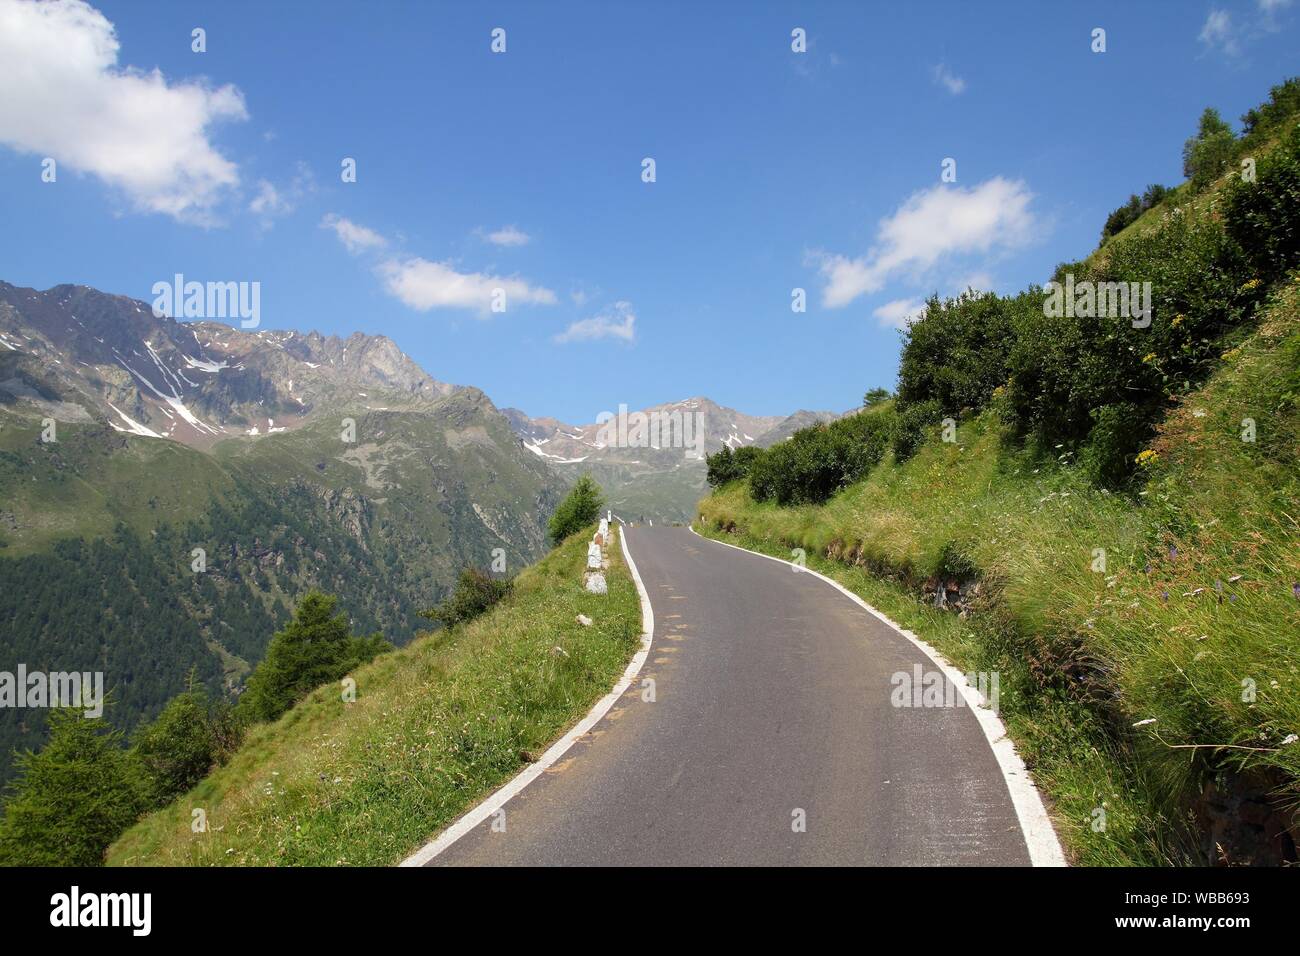 Italien, Nationalpark Stilfser Joch. Berühmte Straße zu Gavia Pass in der Ortlergruppe. Alpine Landschaft. Stockfoto